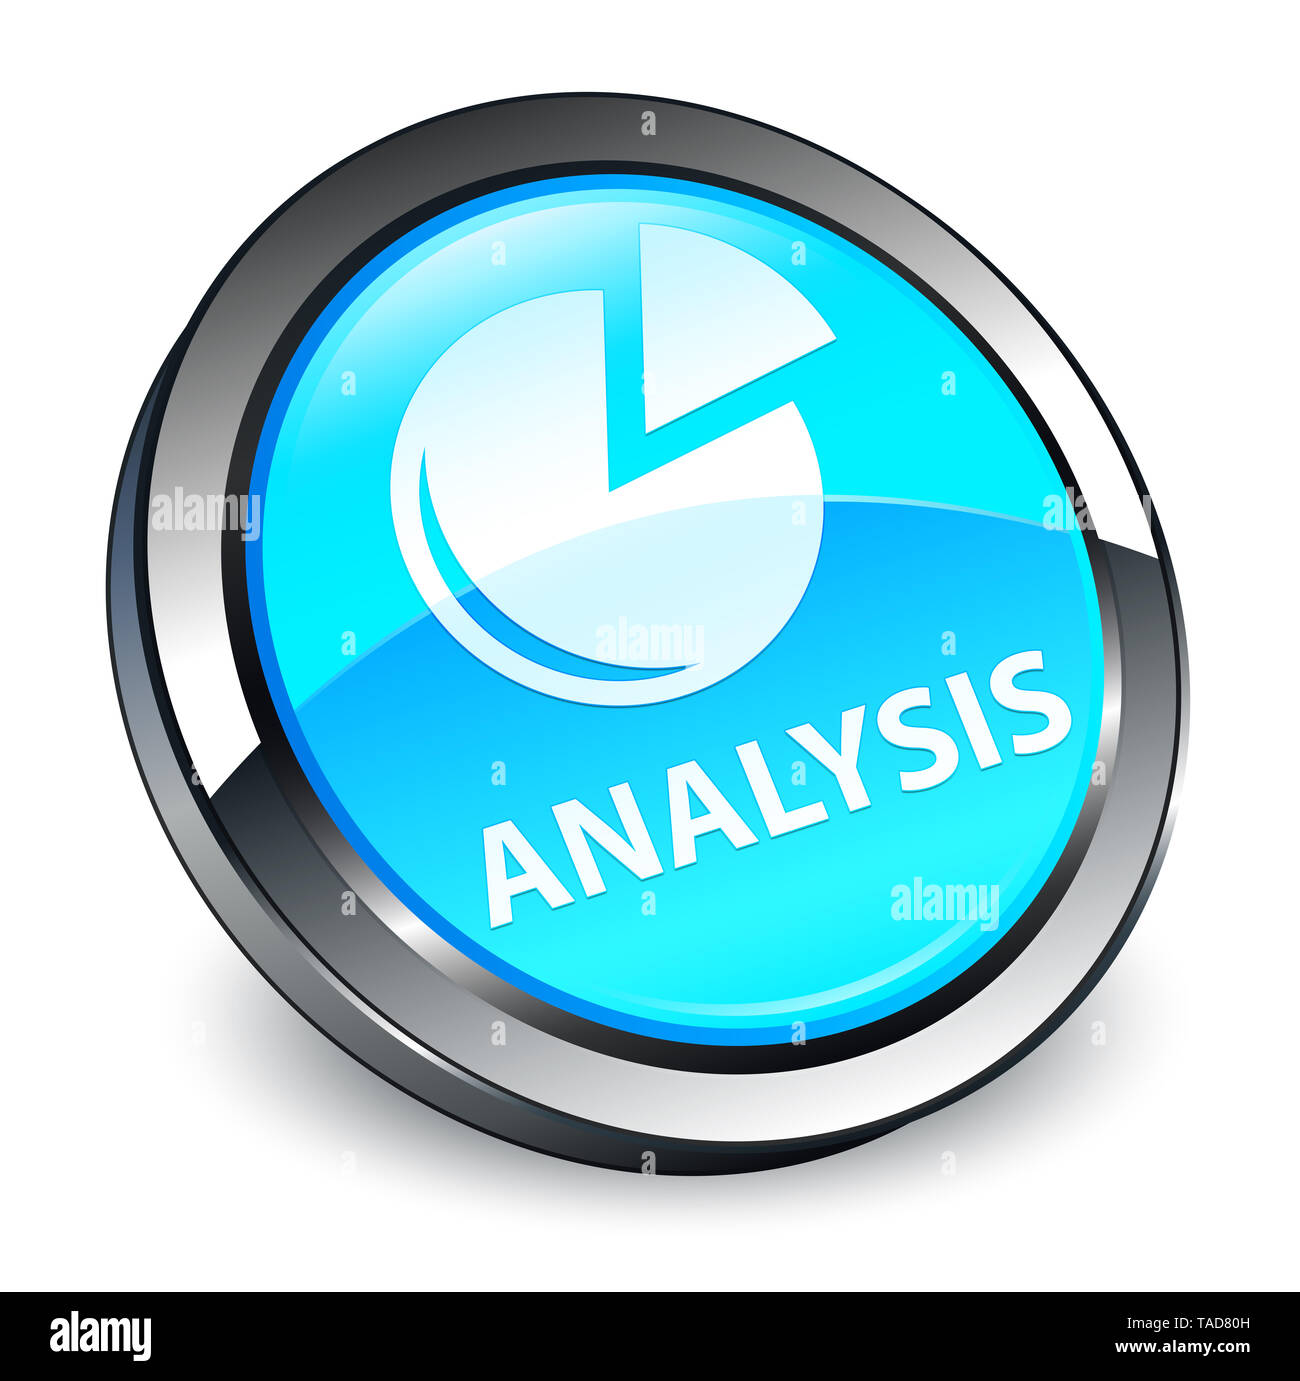 L'analyse (symbole graphique) isolés sur 3d bouton rond bleu cyan abstract illustration Banque D'Images